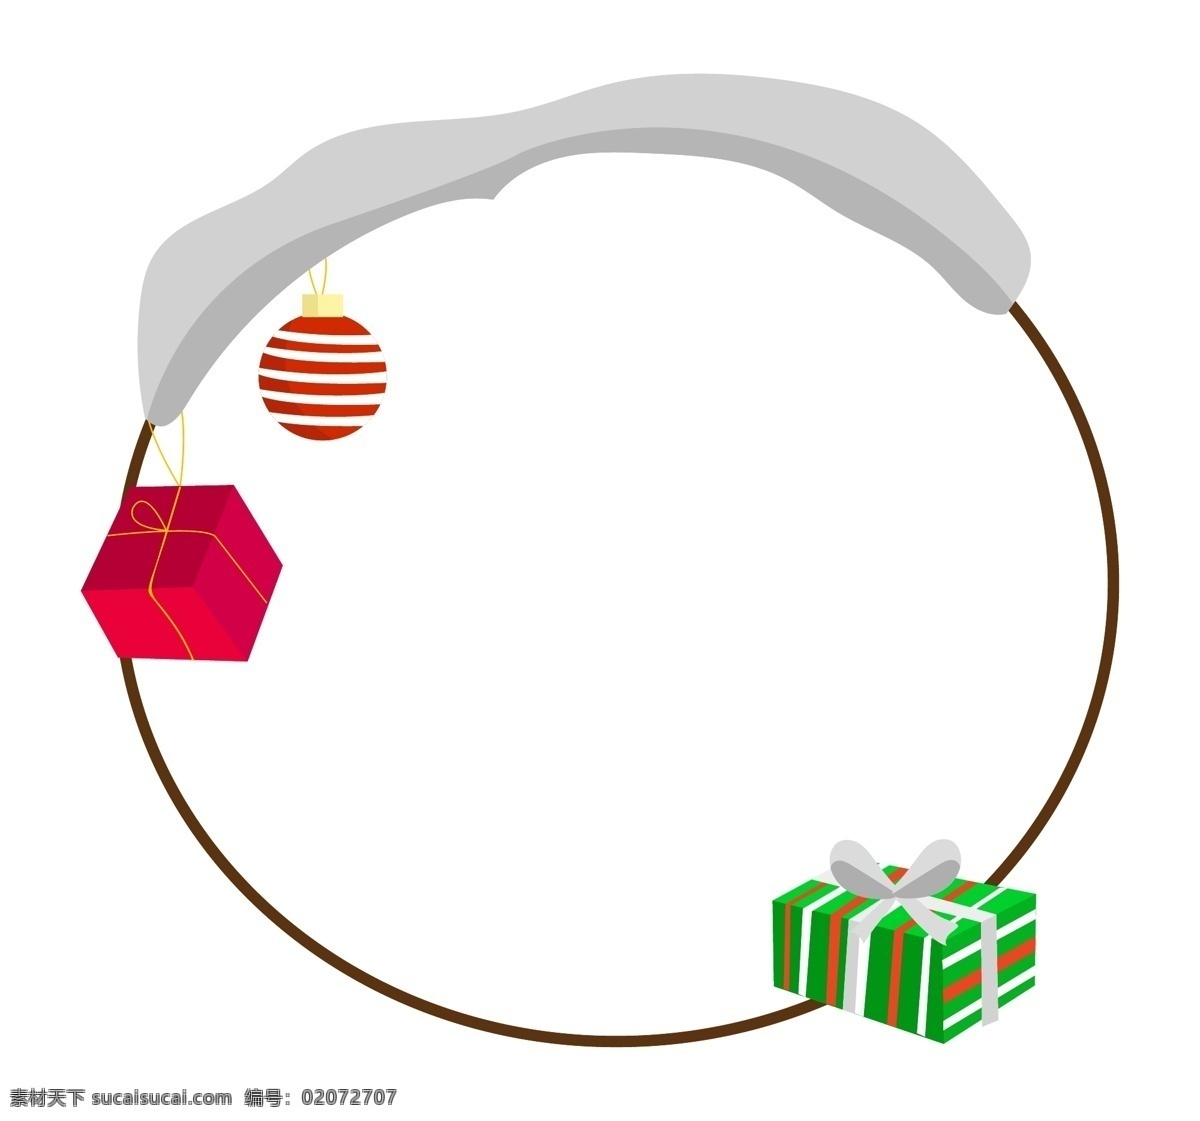 圣诞节 礼物 盒 手绘 边框 圣诞节边框 红色礼品盒 圆形边框 绿色 条纹 礼品盒 红色彩球边框